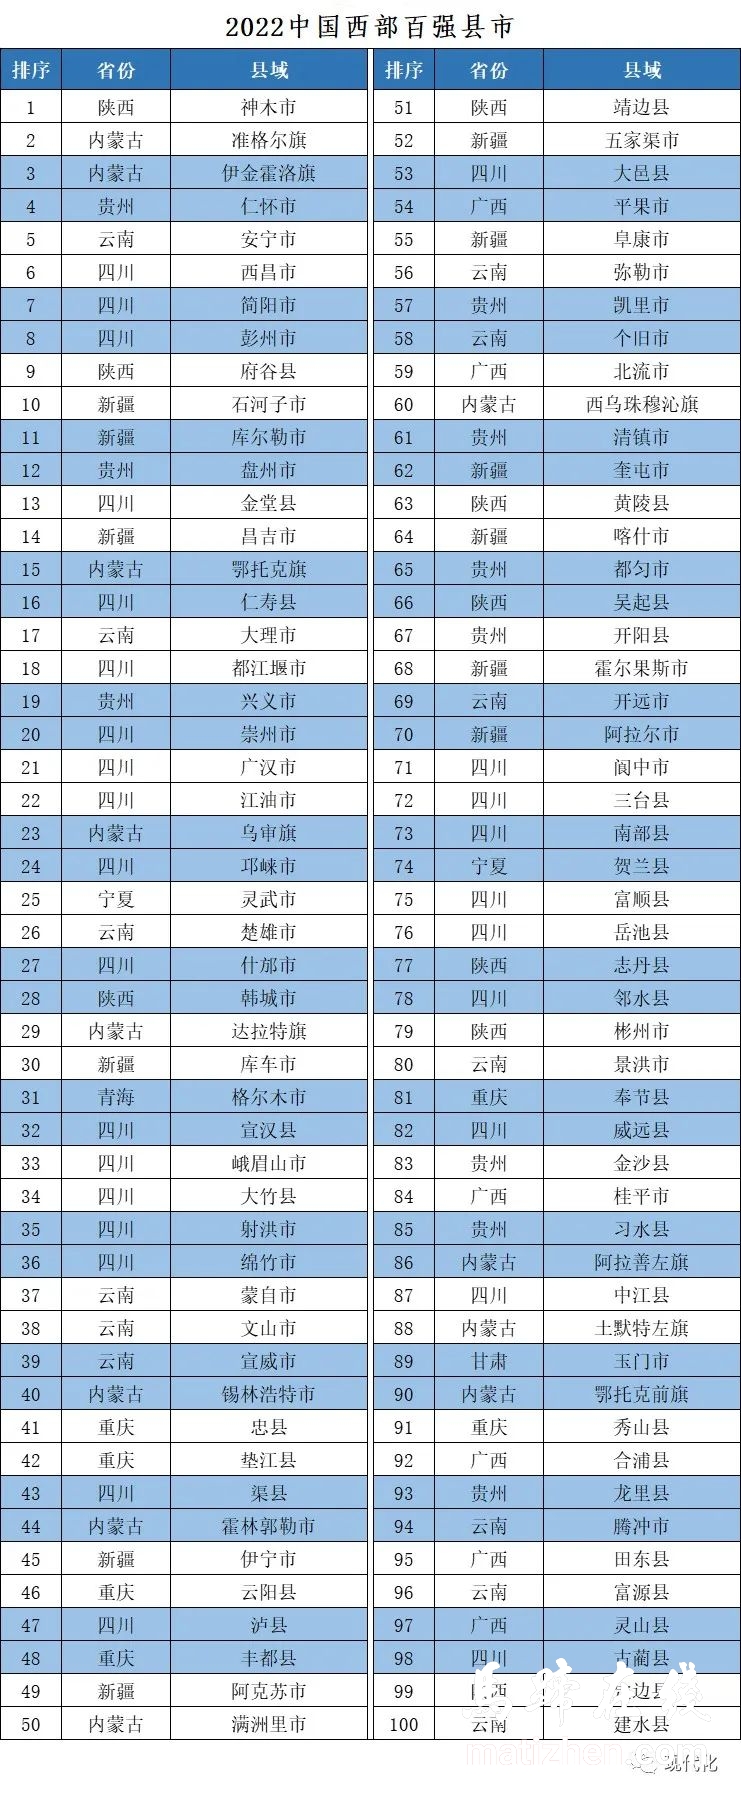 古蔺县进入2022中国西部百强县名单插图